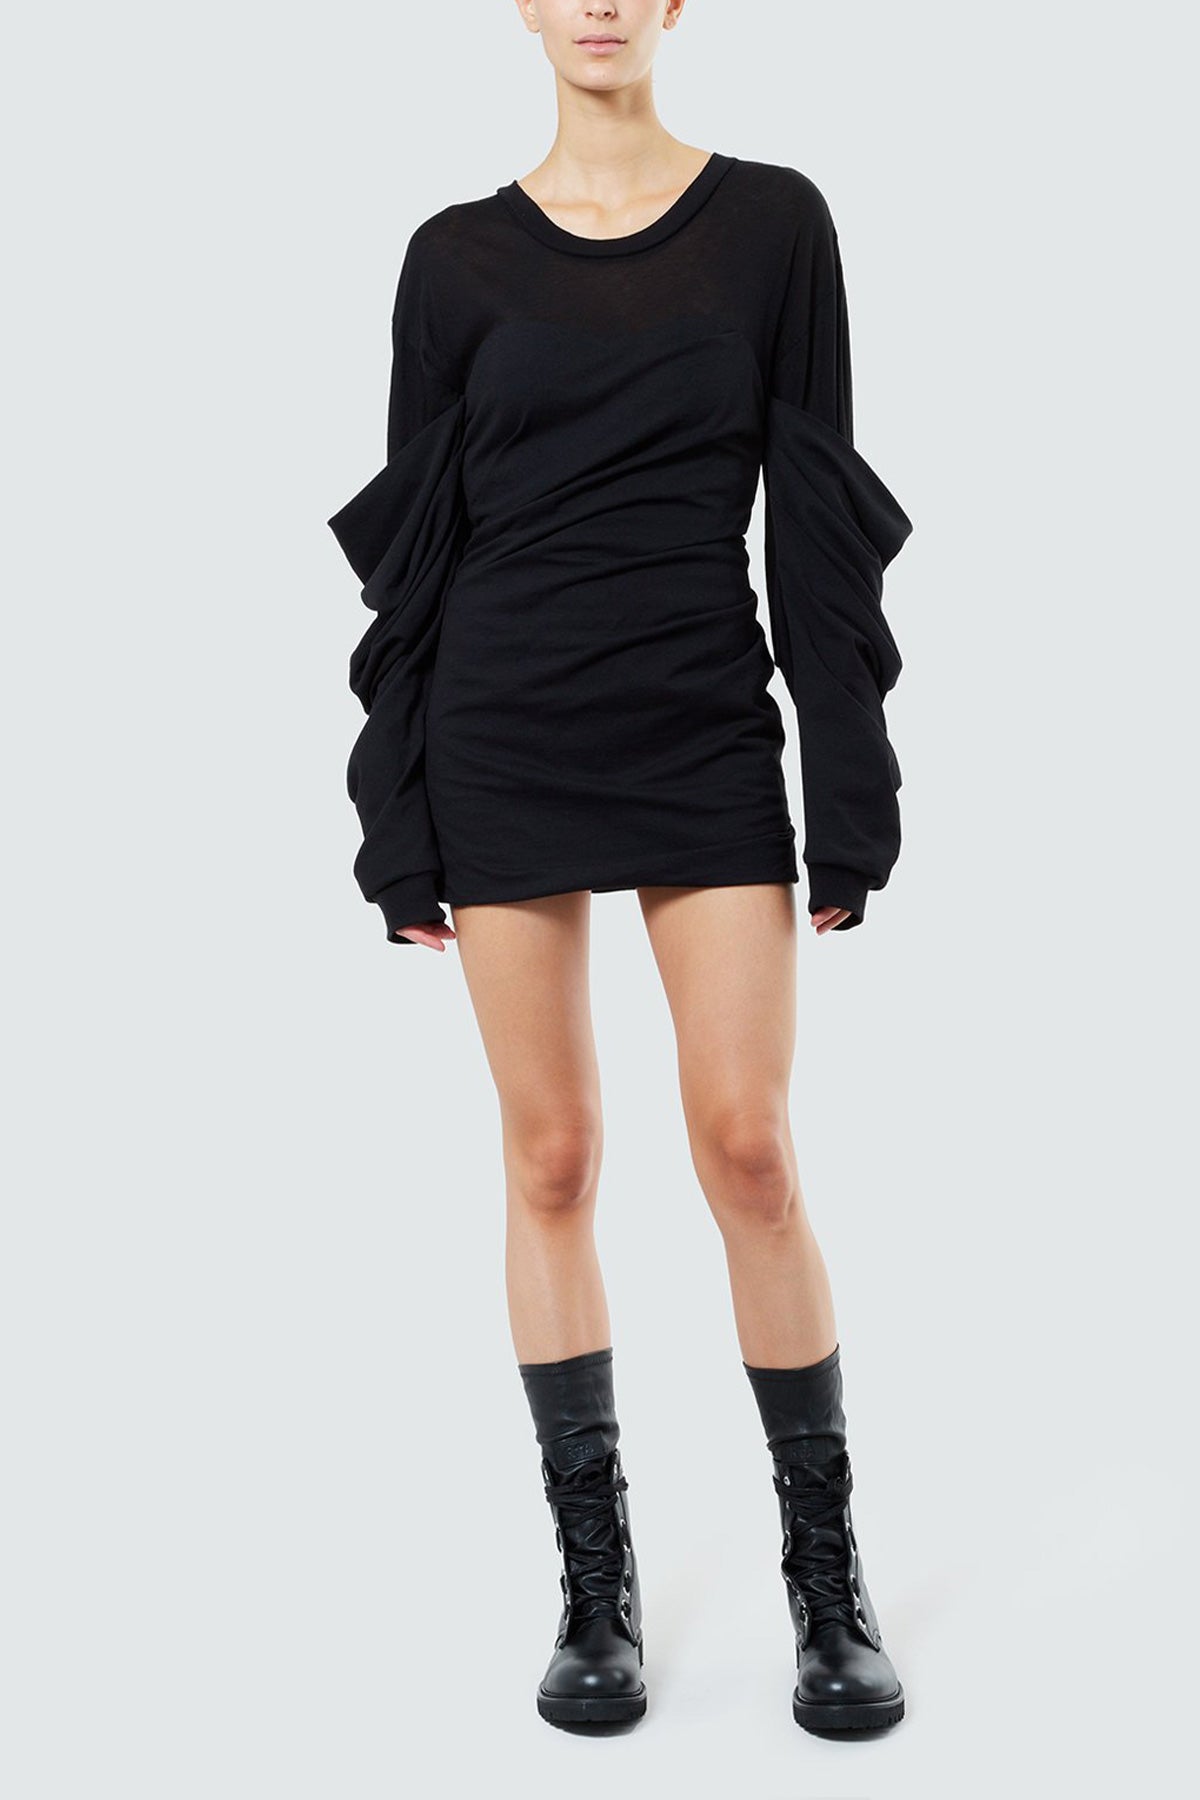 Indya Dress in Black - shop-olivia.com